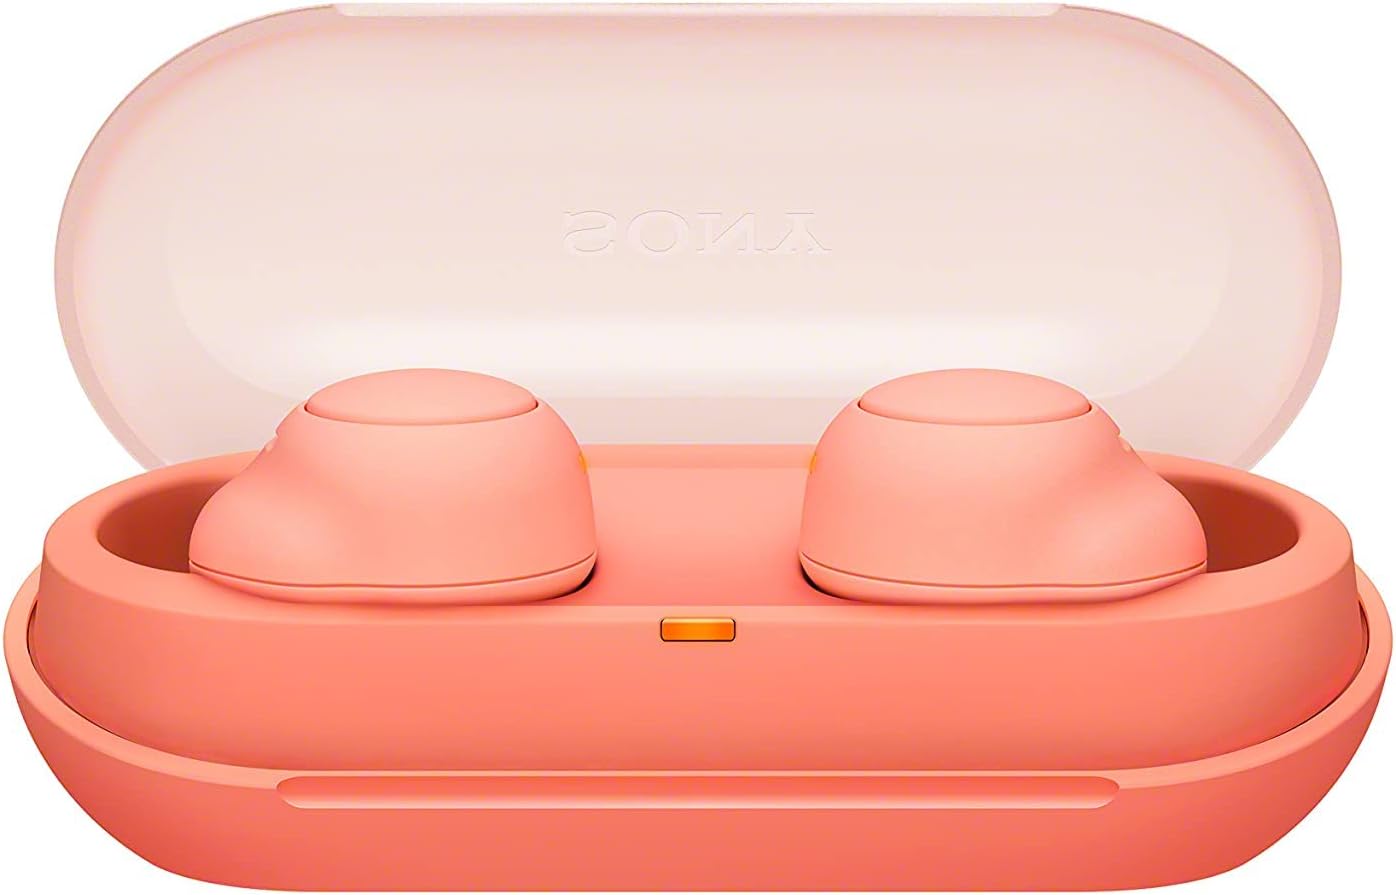 sony-wf-c500-truly-wireless-earbuds-coral orange-2